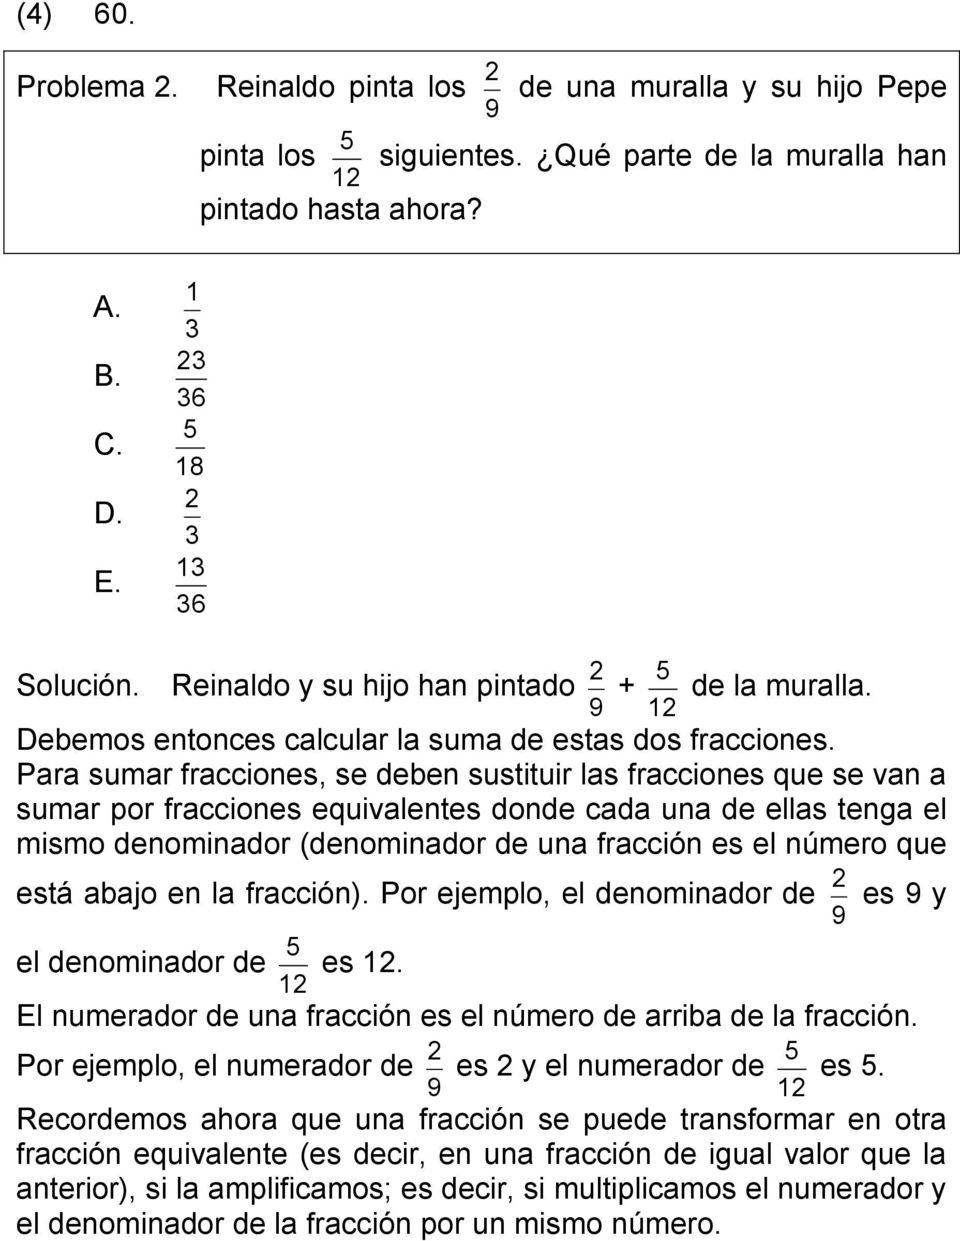 Para sumar fracciones, se deben sustituir las fracciones que se van a sumar por fracciones equivalentes donde cada una de ellas tenga el mismo denominador (denominador de una fracción es el número